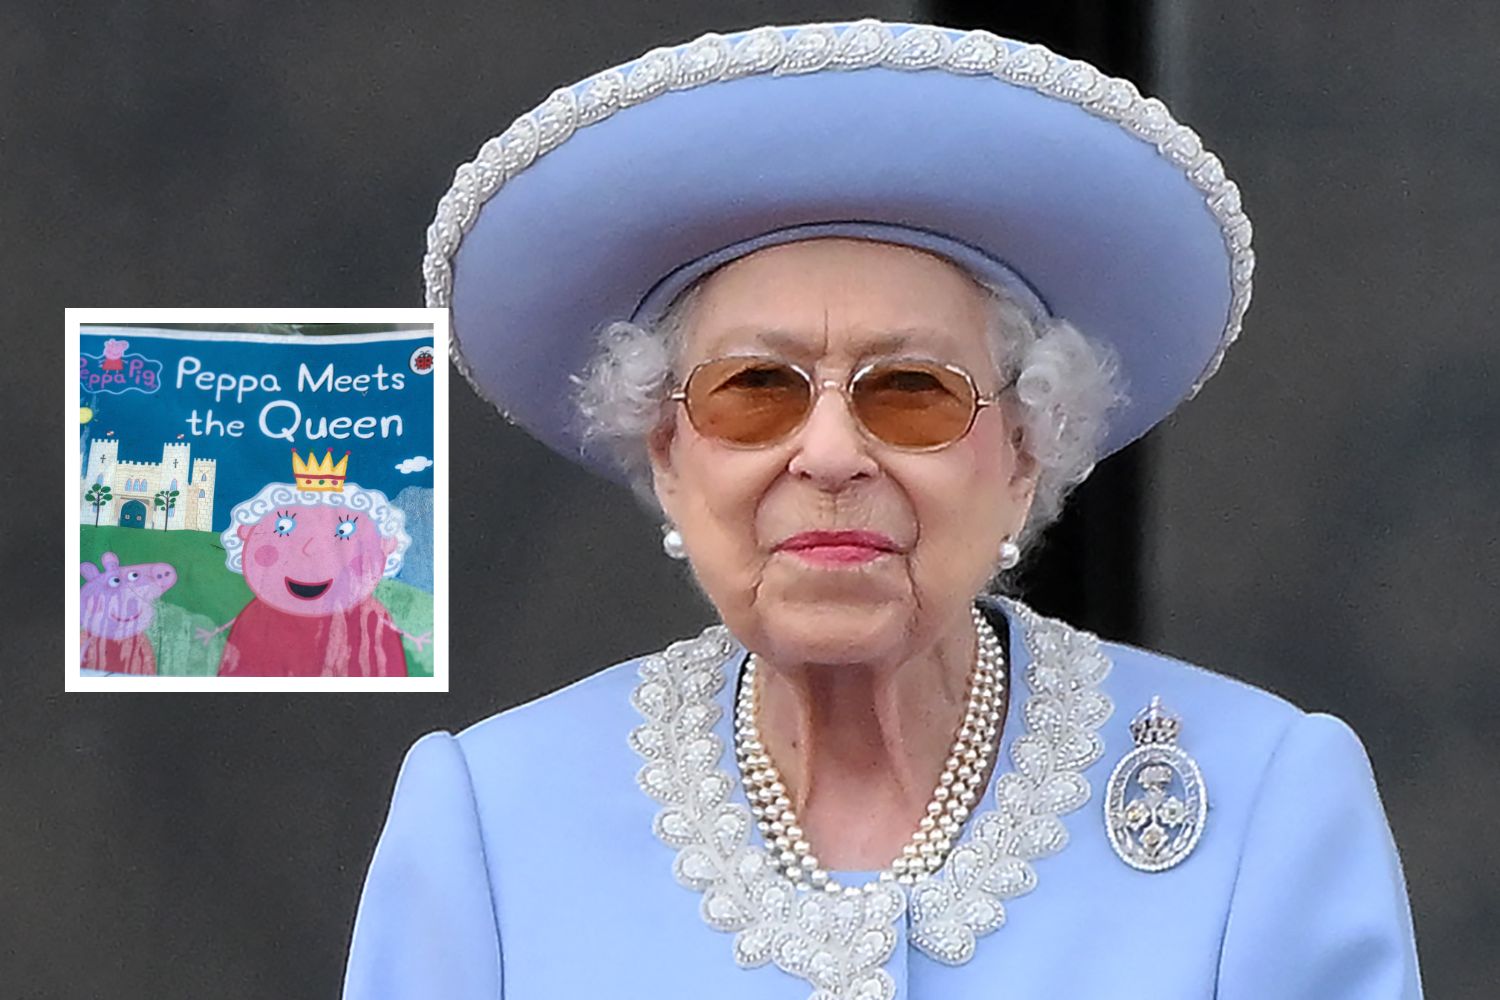 https://d.newsweek.com/en/full/2211099/queen-peppa-pig-book.jpg